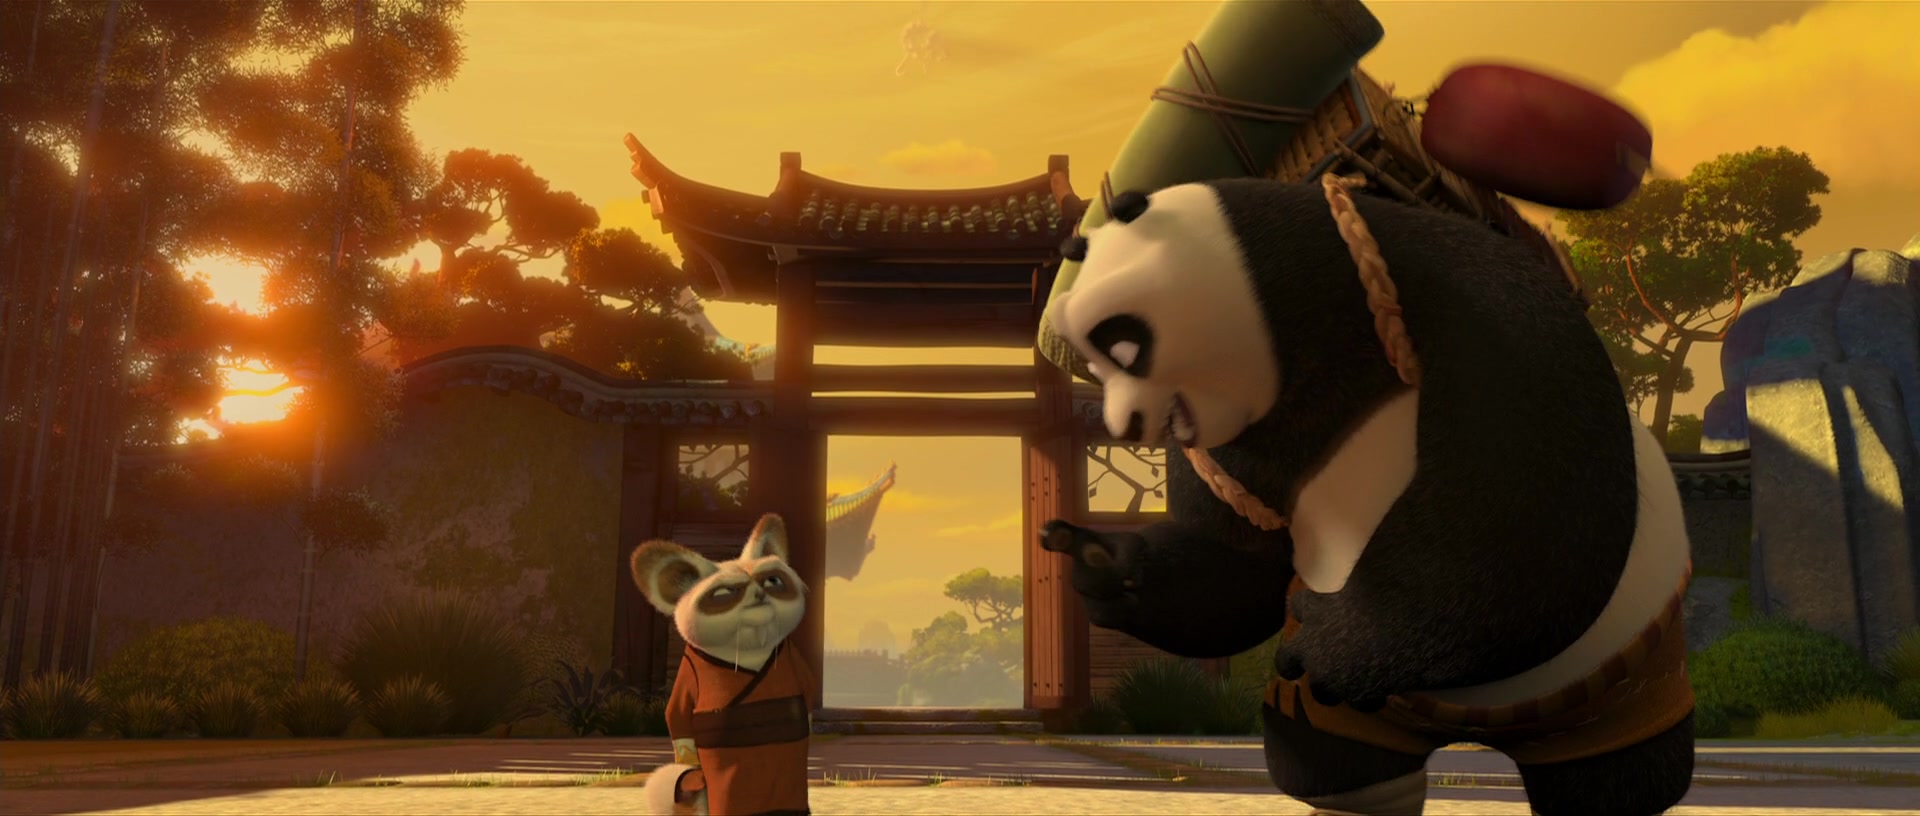 Kung Fu Panda Screencap | Fancaps